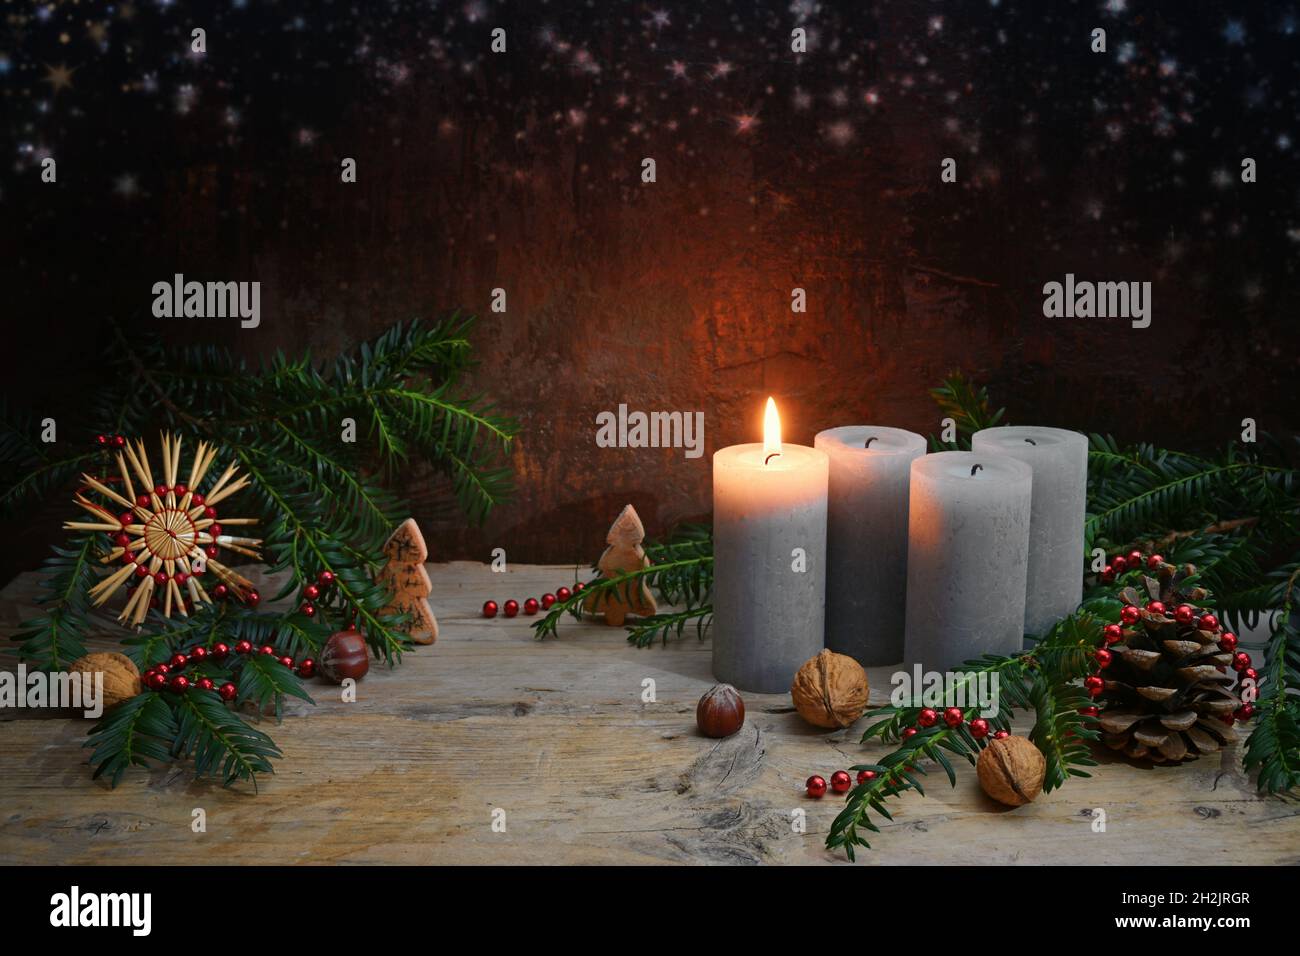 Premier Avent, une des quatre bougies est éclairée, décoration de Noël comme des noix, étoile de paille, des cônes et des branches de sapin sur bois rustique contre un b brun foncé Banque D'Images